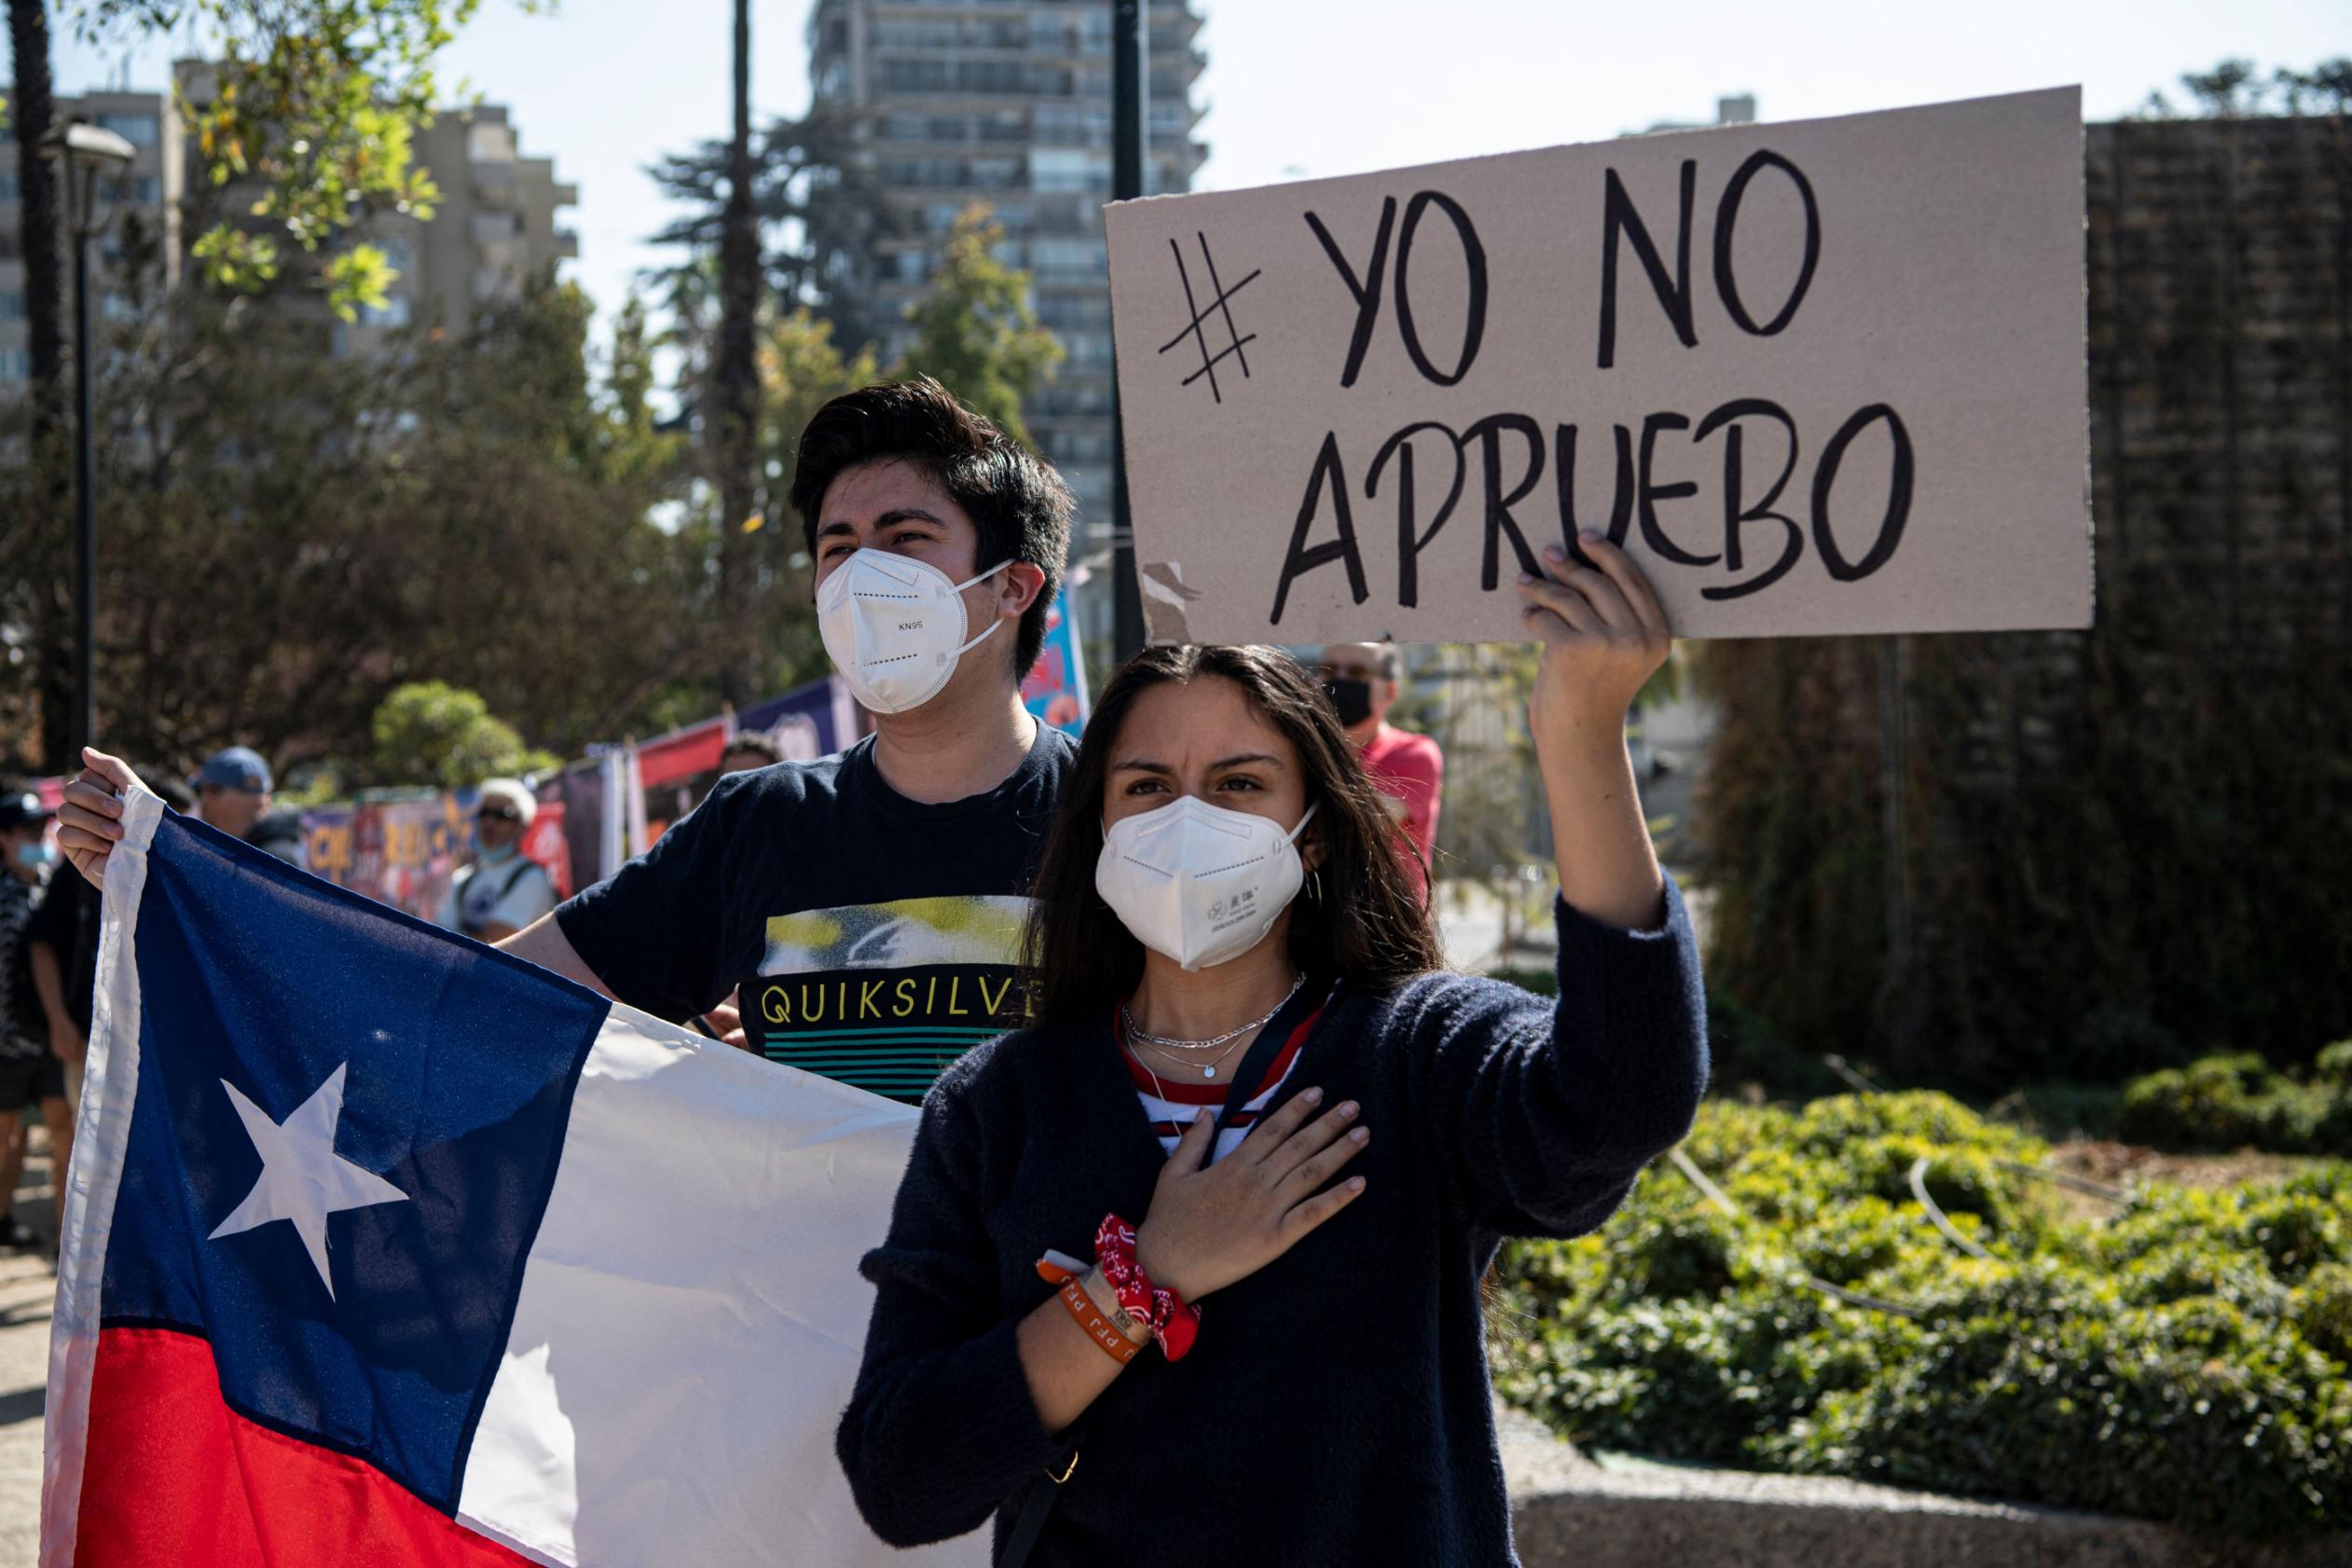 ¿Por qué un sector de la población chilena rechaza una nueva constitución?, un analista lo explica - CNN Video